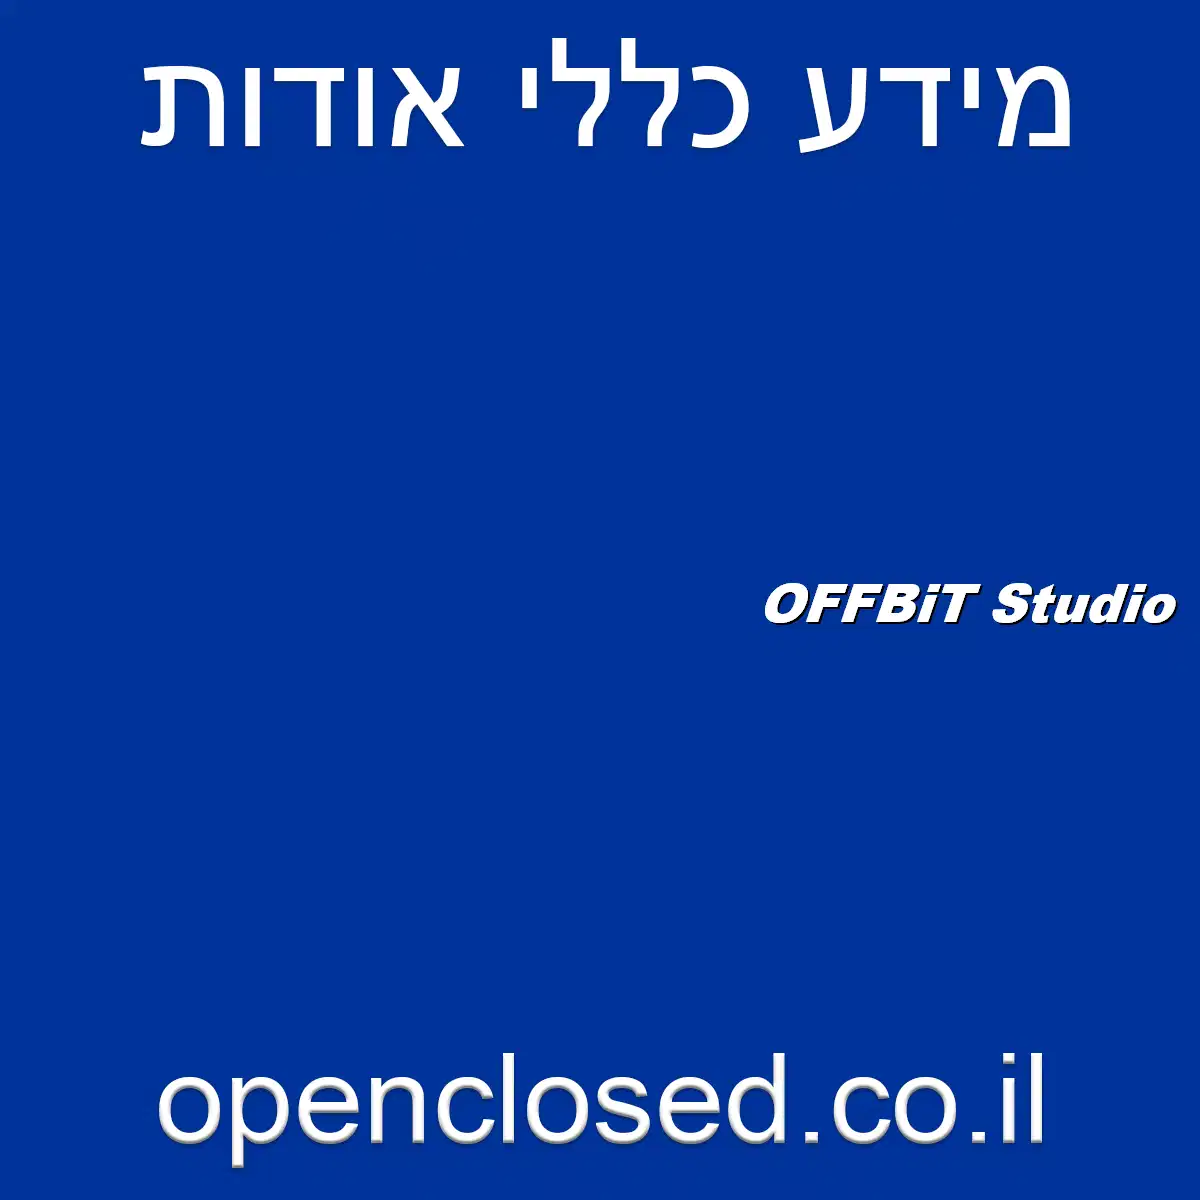 OFFBiT Studio